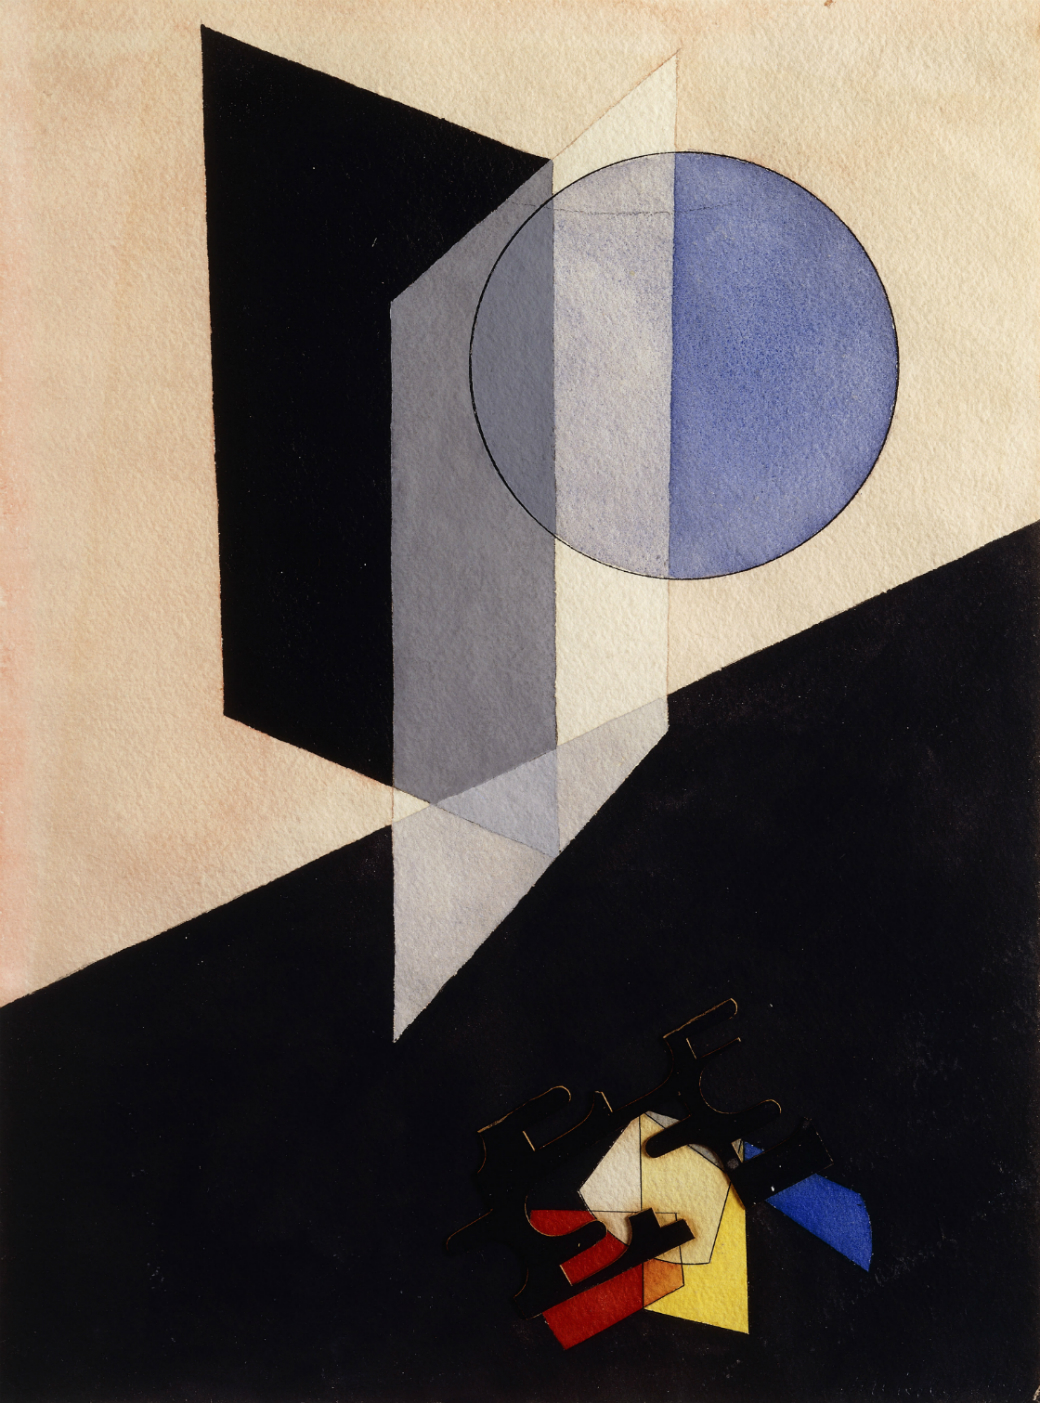 Moholy Nagy, Laszlo (1895-1946): Untitled. 1926. ©2019. Christie's Images, London/Scala, Florence. 